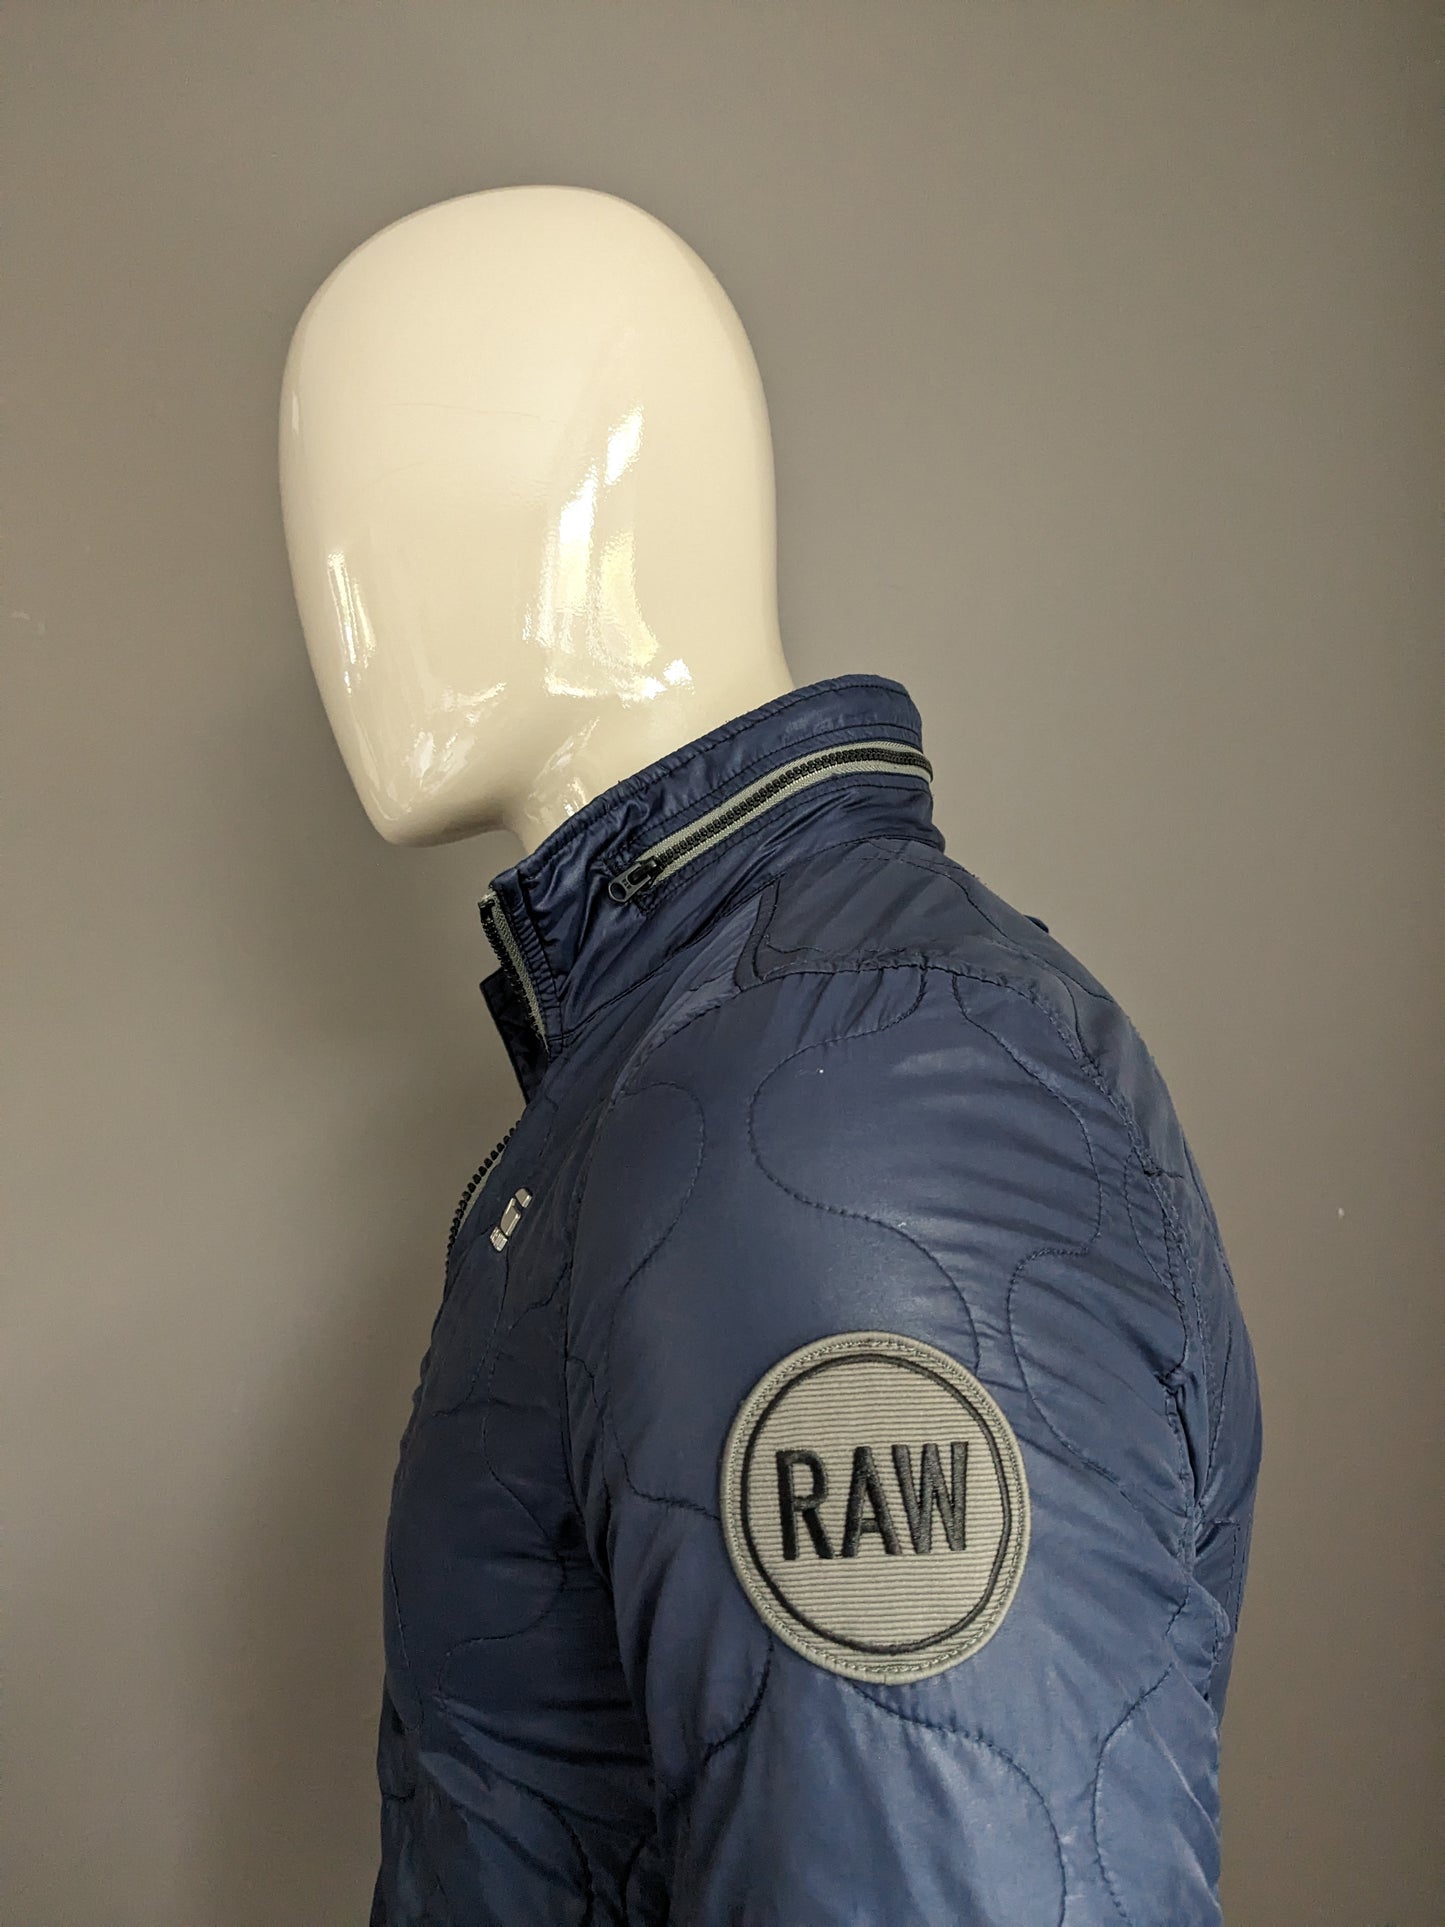 G-Star Raw licht gewicht gewatteerde jas met verborgen capuchon. Donker Blauw gekleurd. Maat S.